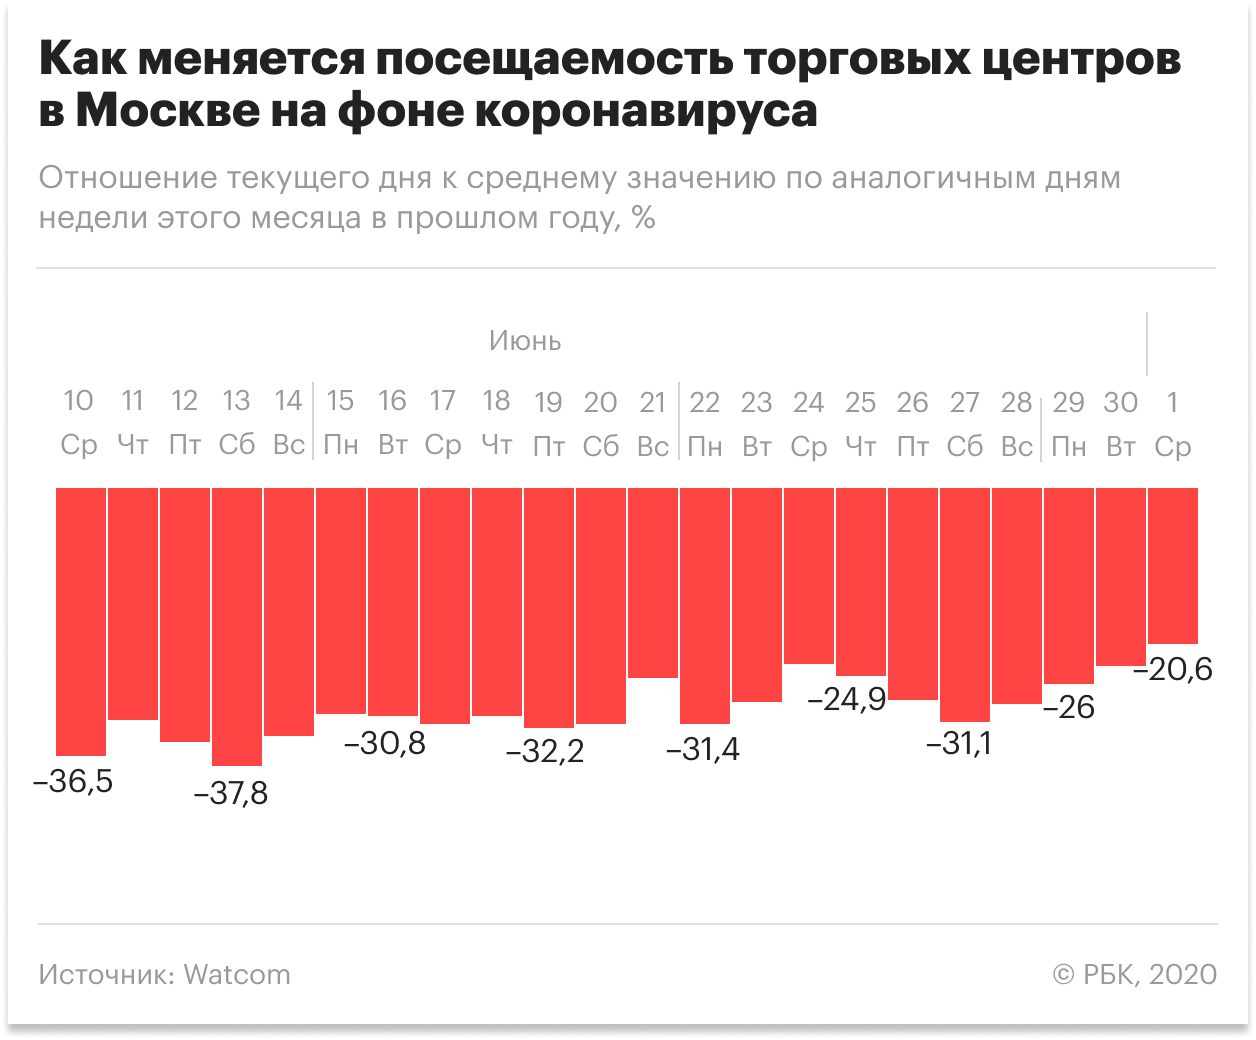 ЦБ сообщил об отказе 44% россиян от обычных покупок ради экономии